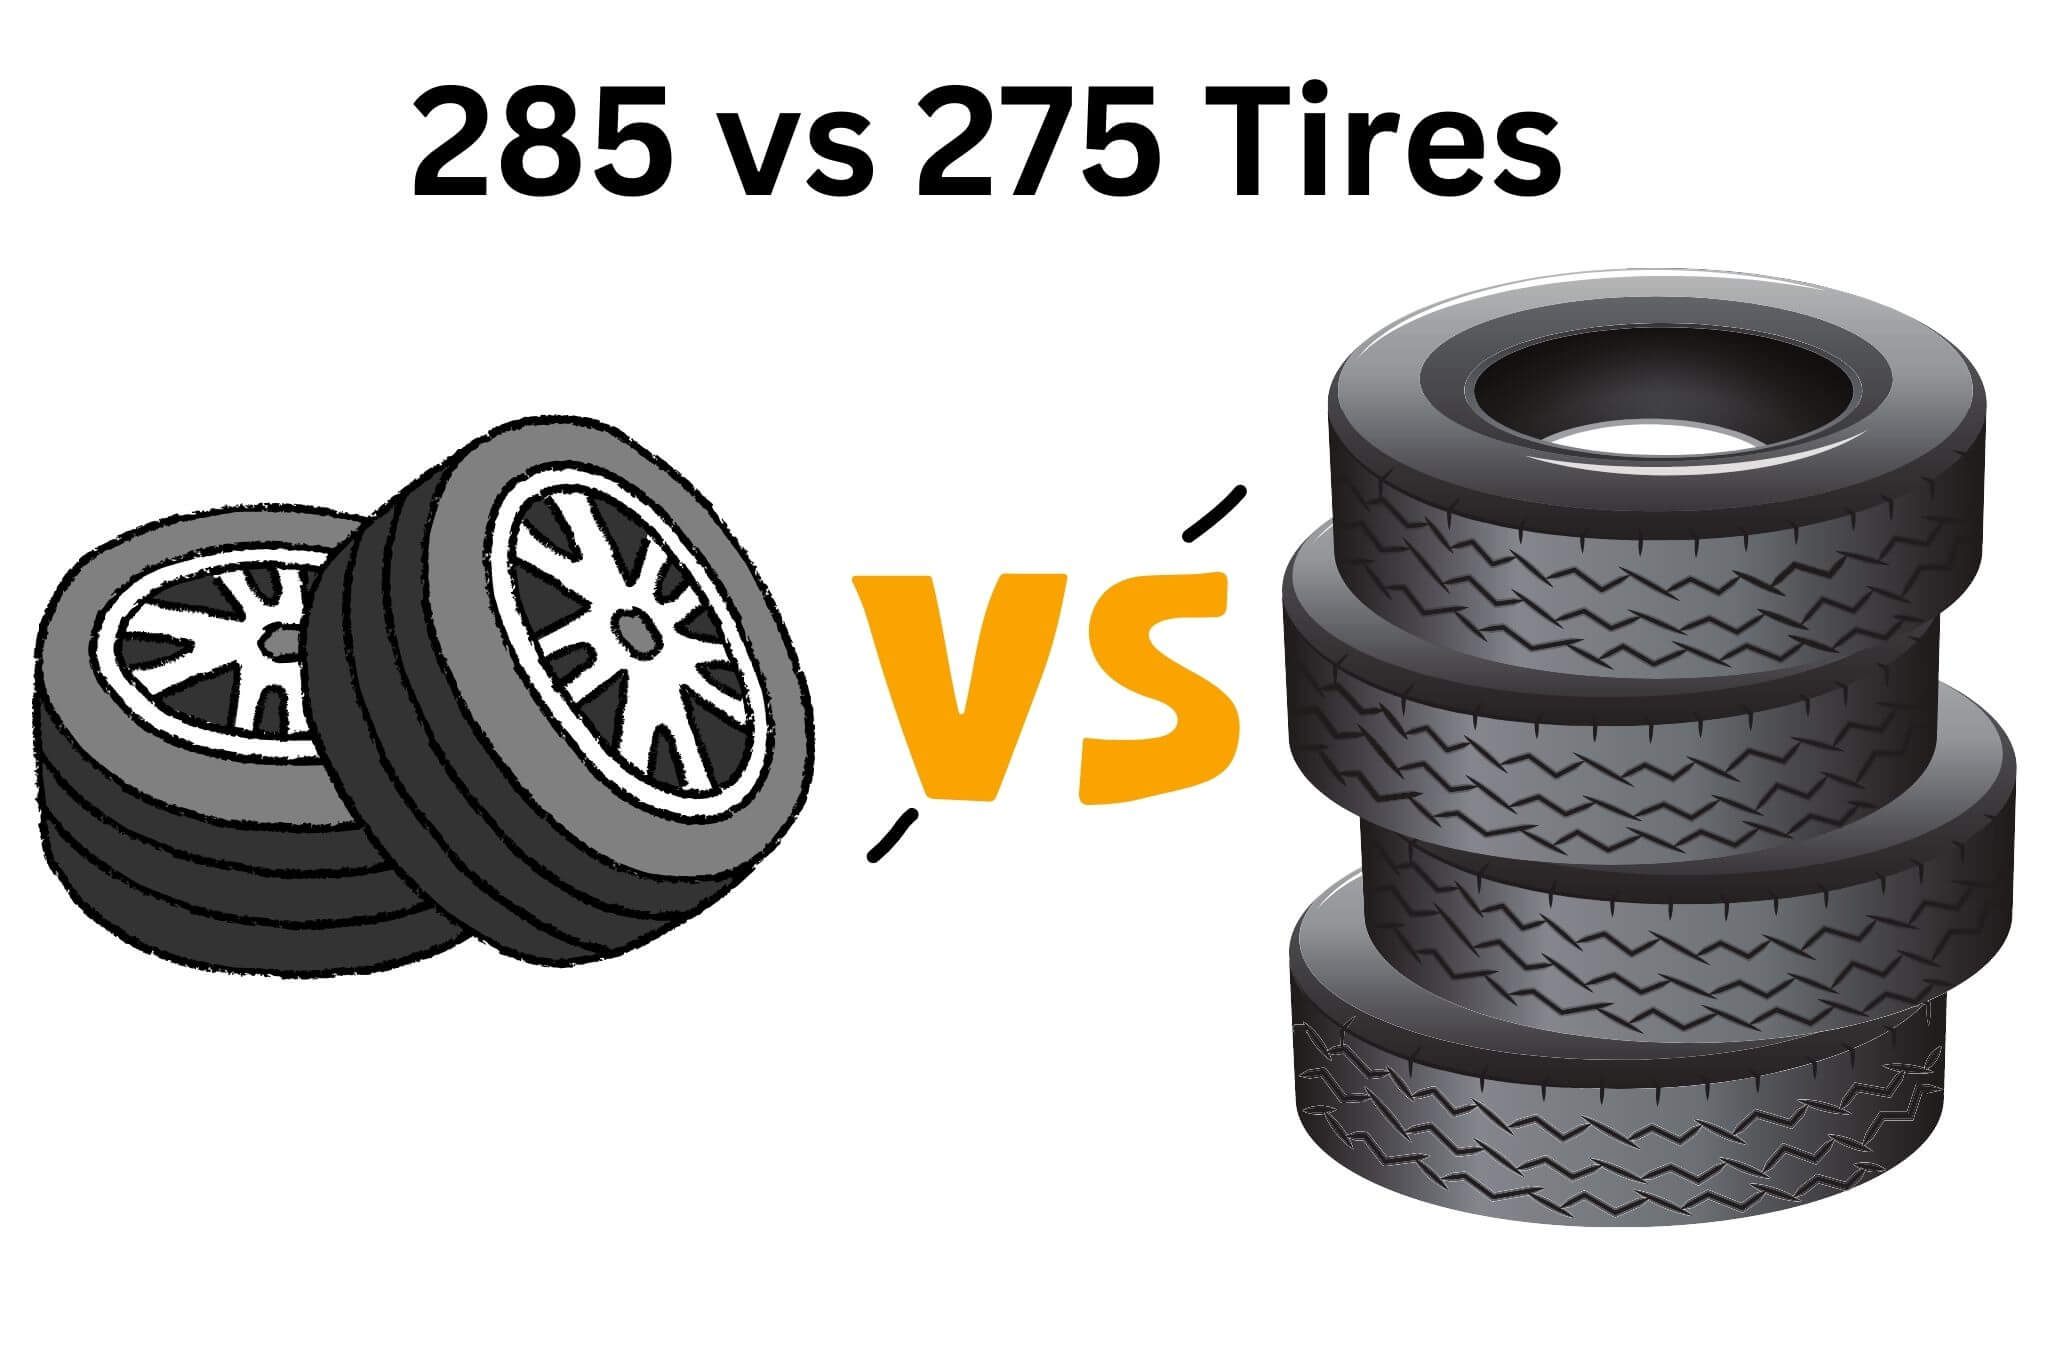 285 vs 275 Tires